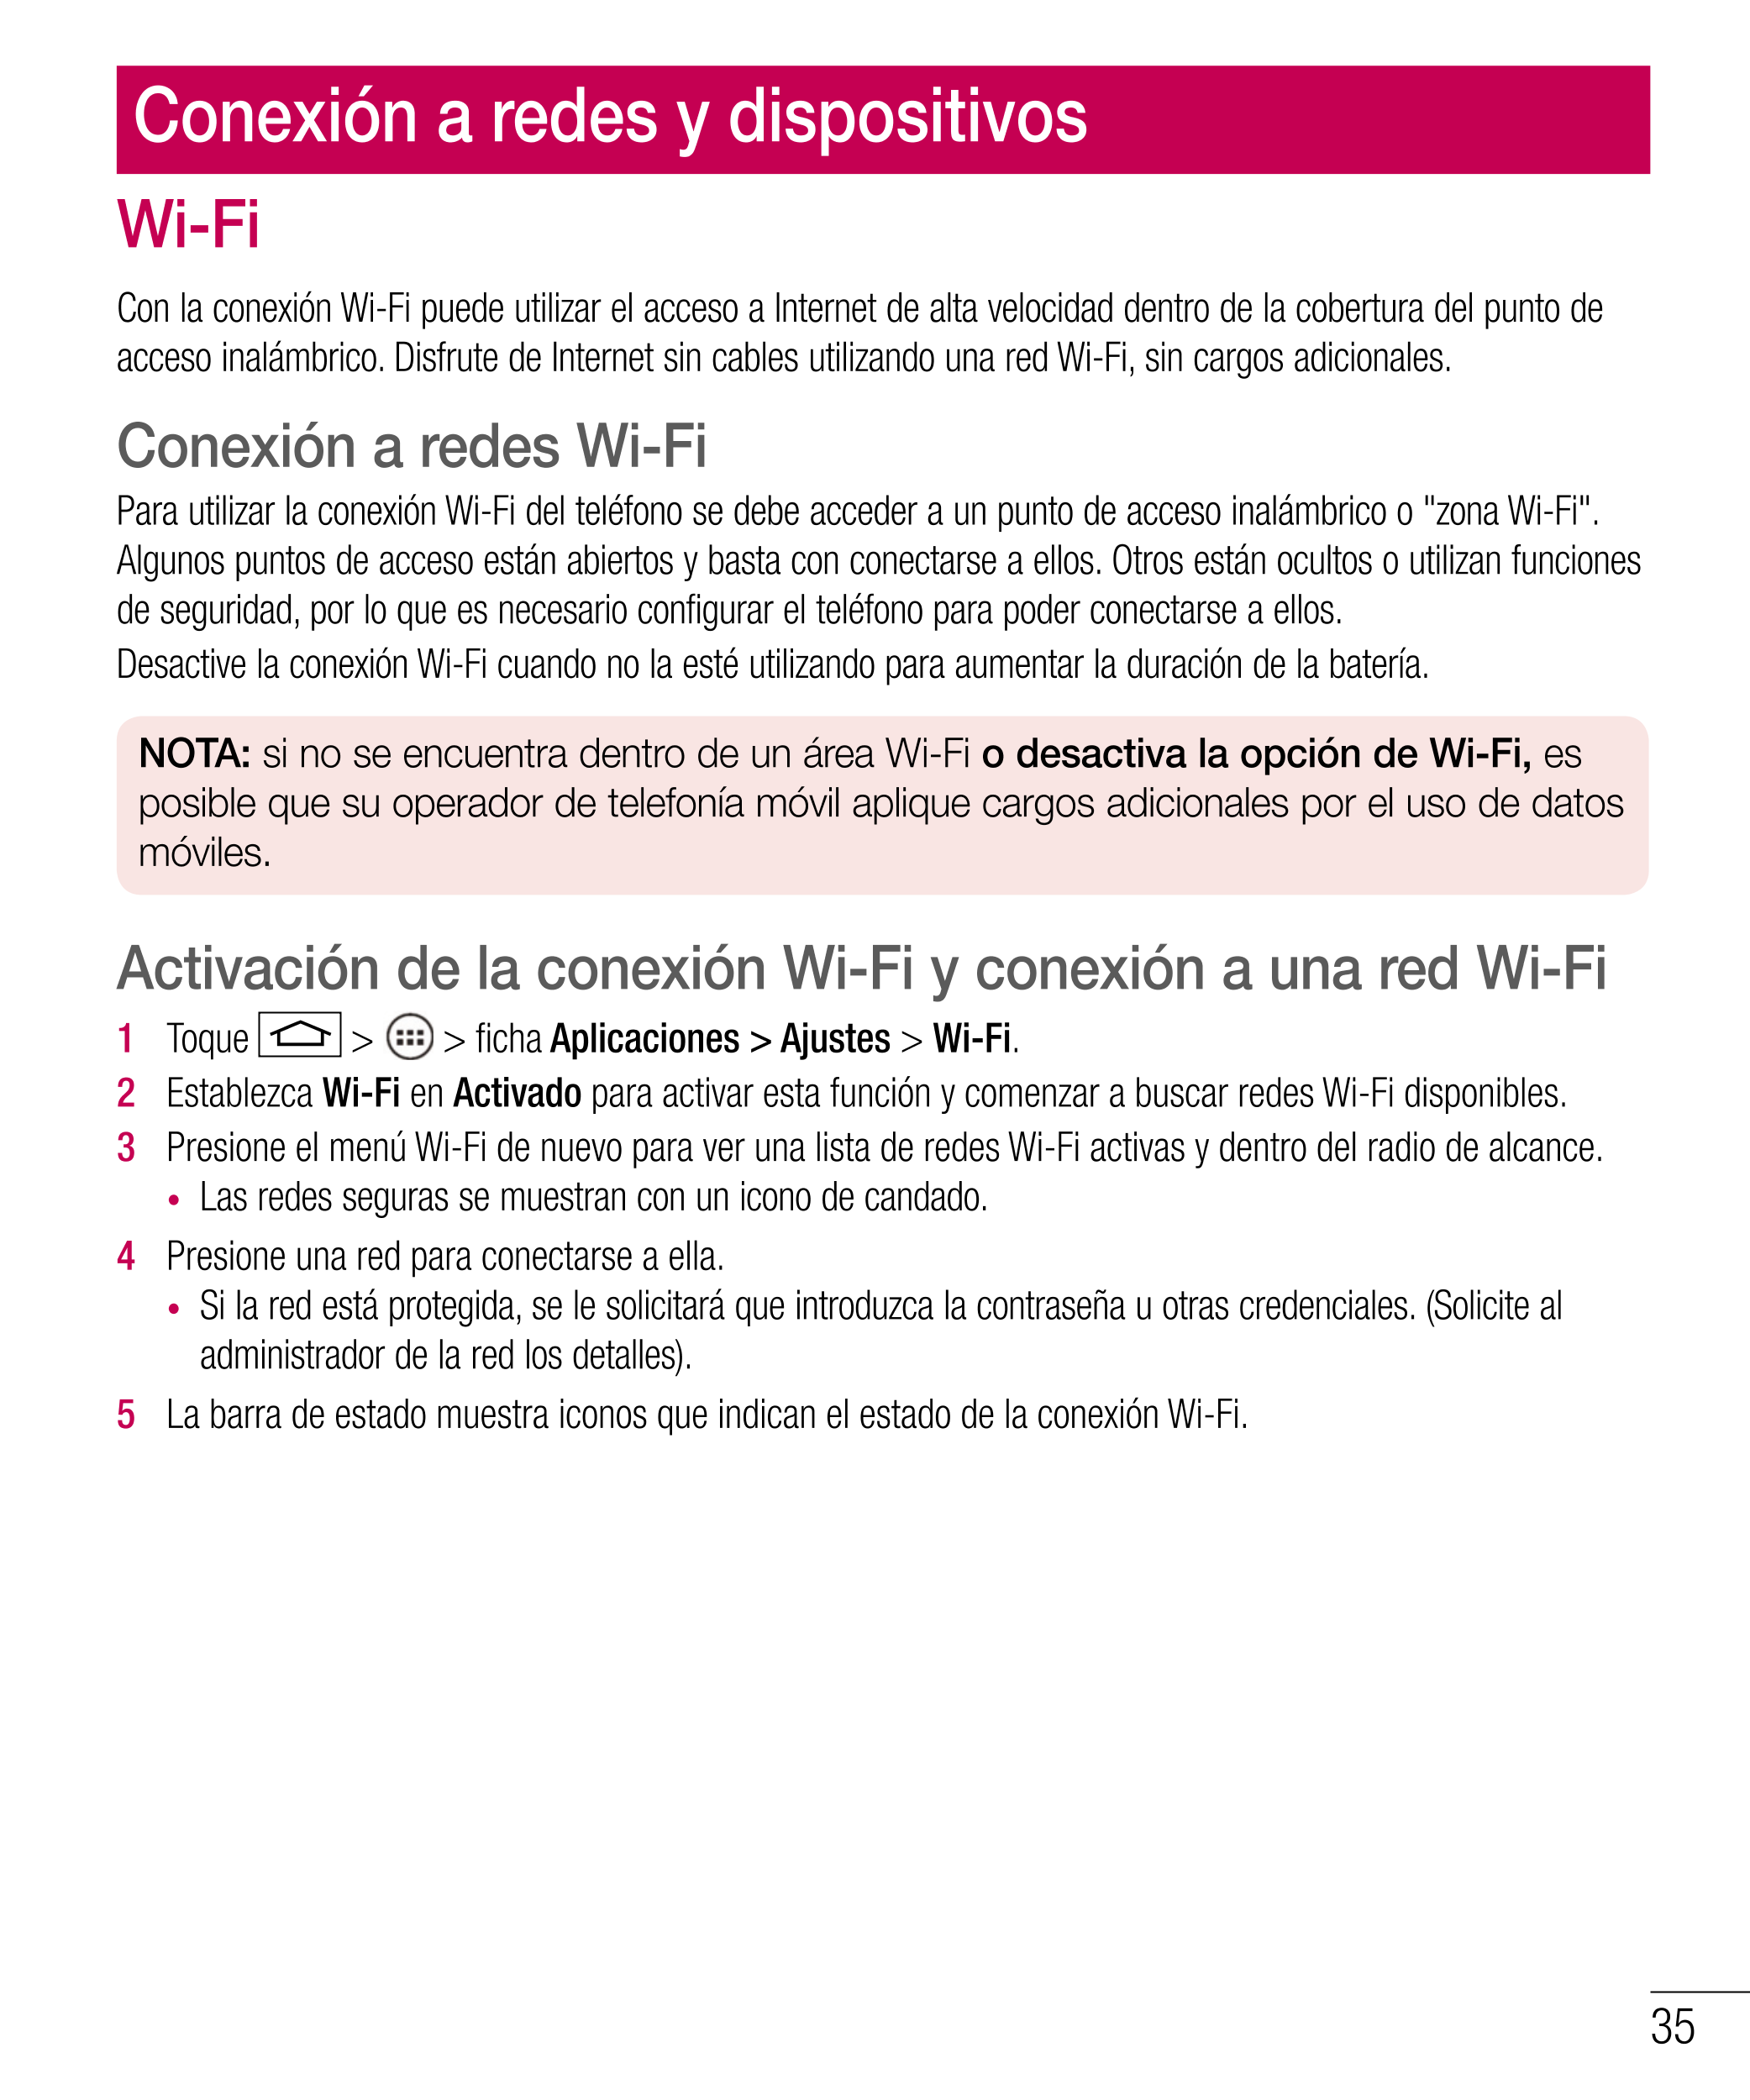 Conexión a redes y dispositivos
Wi-Fi
Con la conexión Wi-Fi puede utilizar el acceso a Internet de alta velocidad dentro de la c